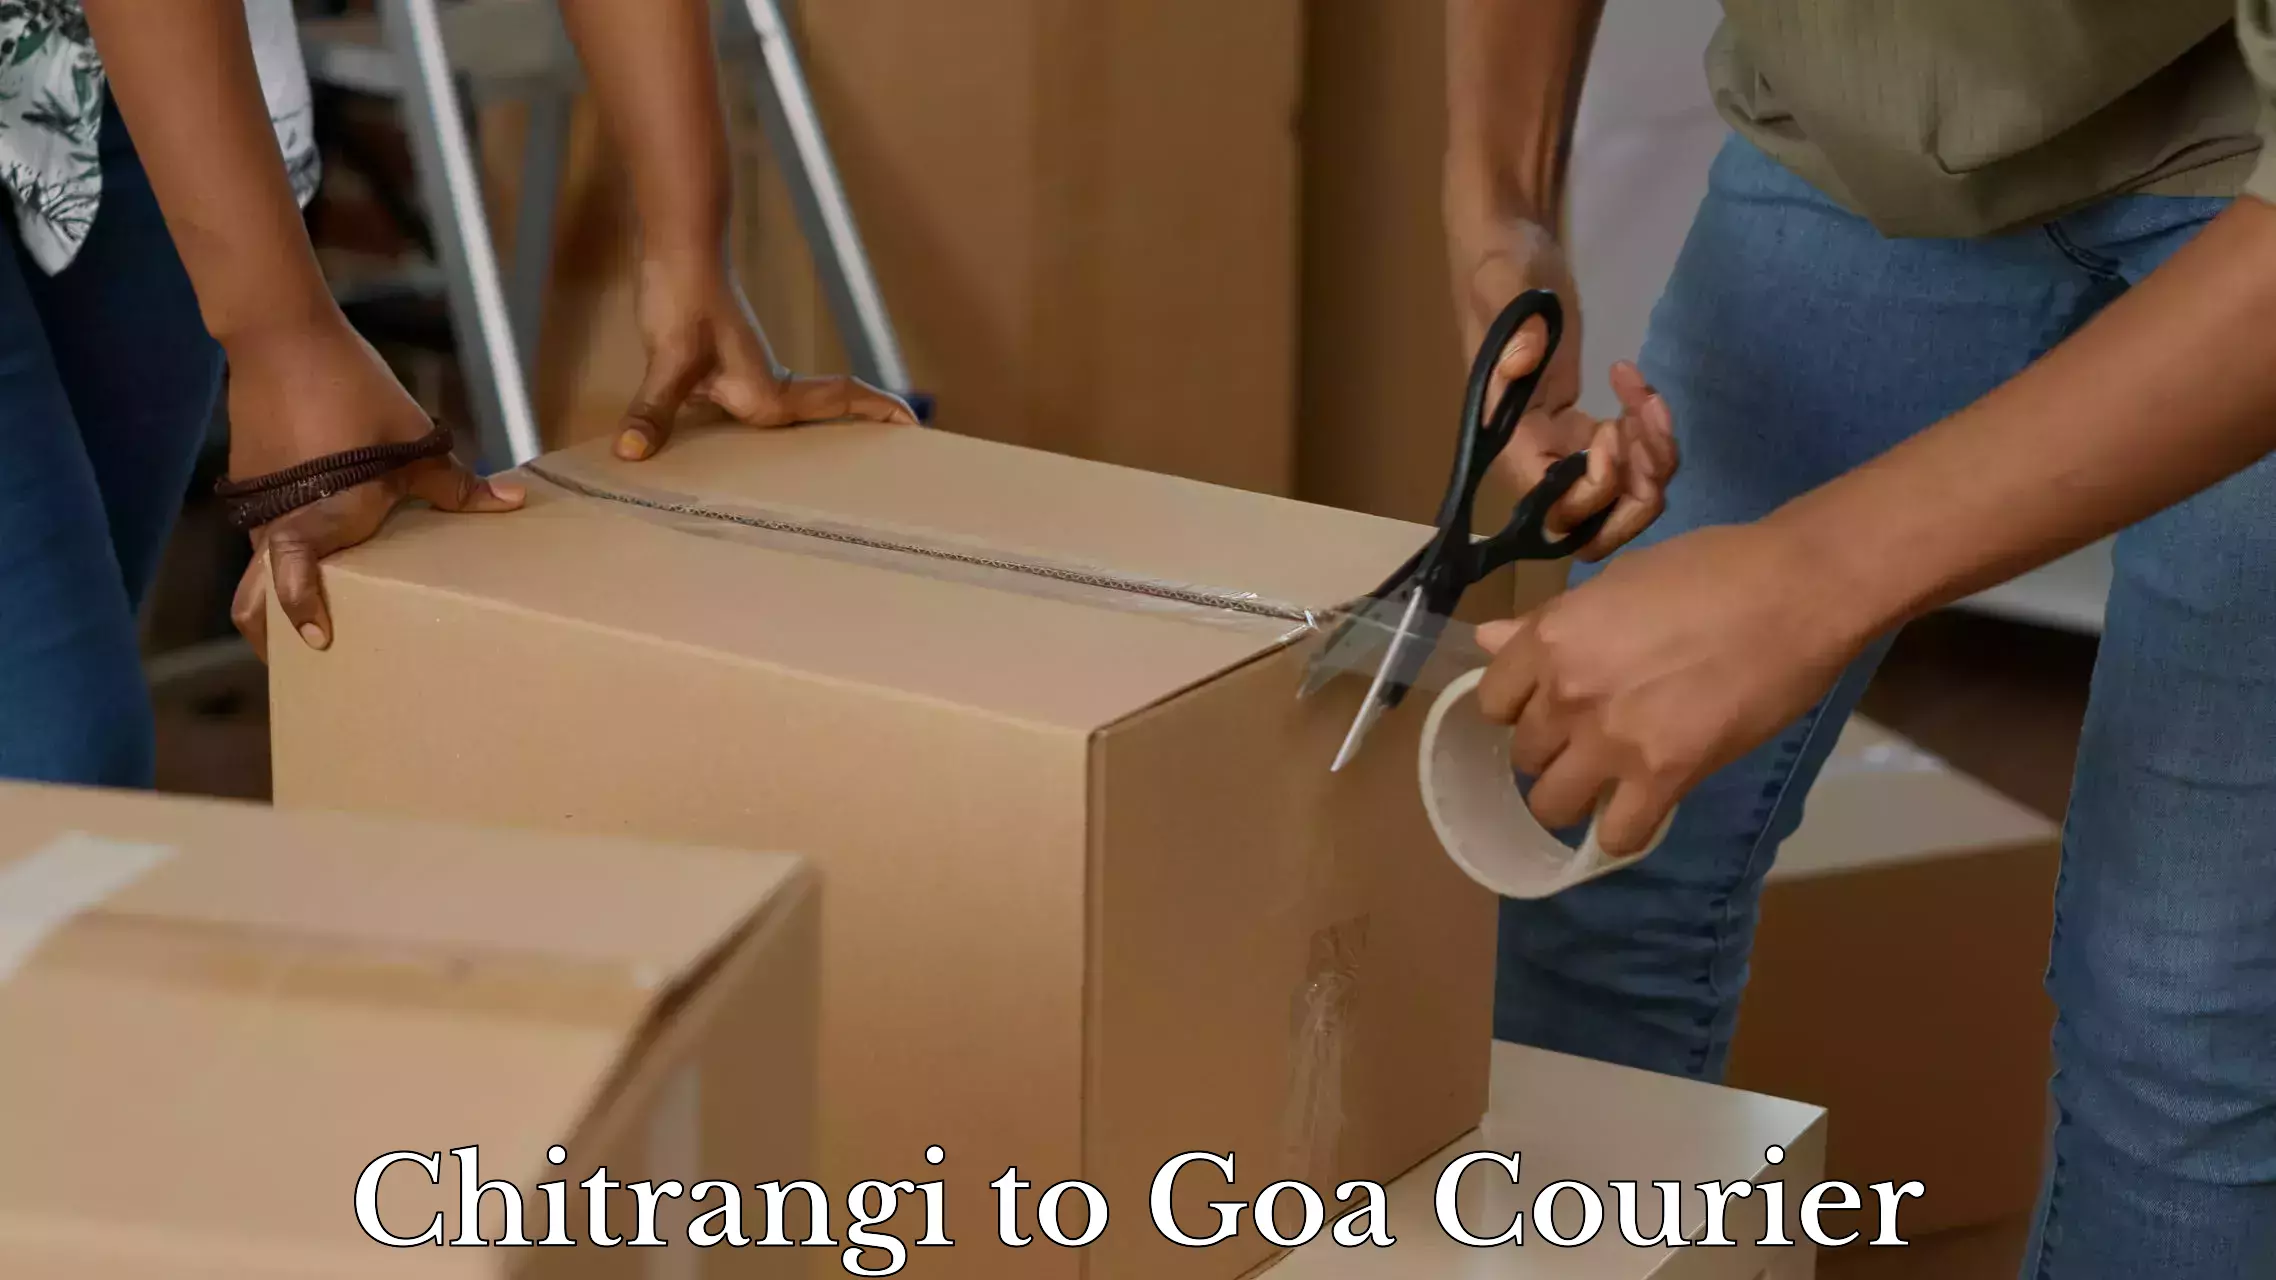 Baggage shipping experience Chitrangi to Goa University